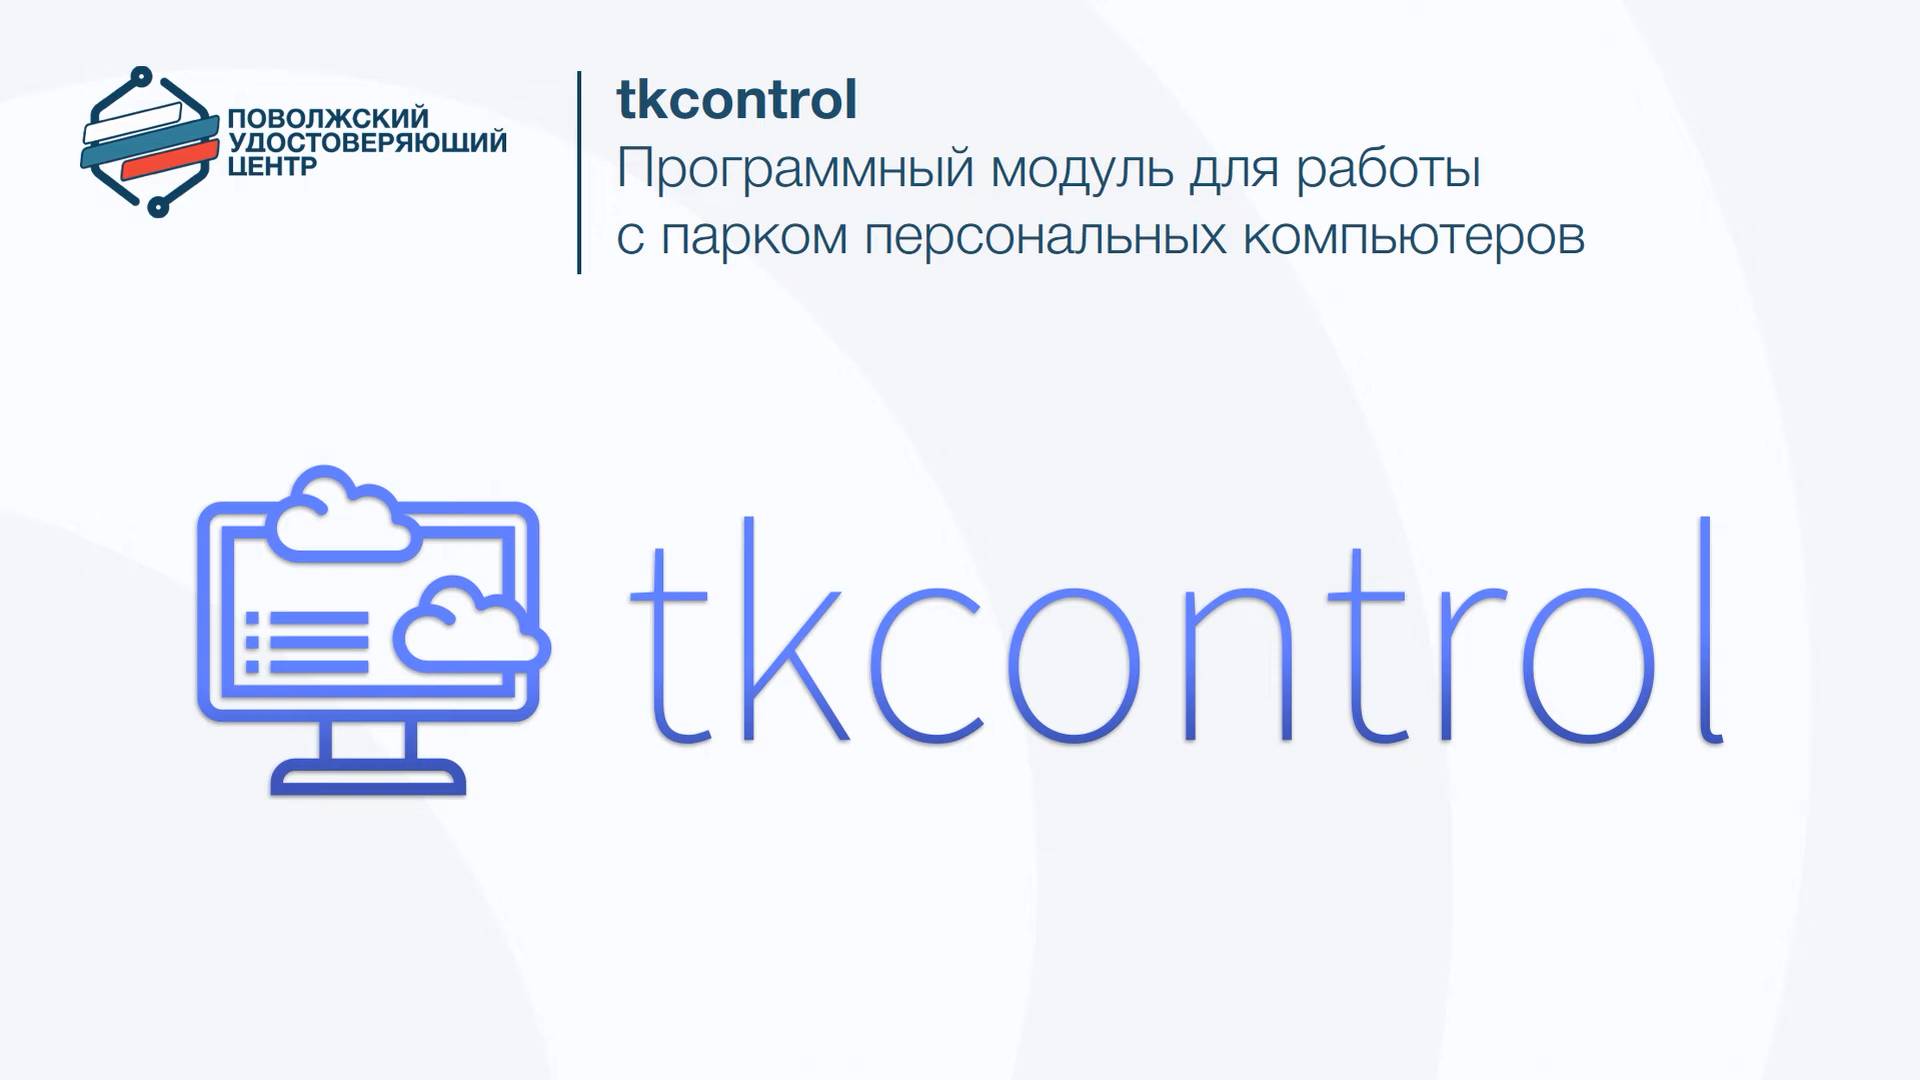 tkcontrol - программа для управлением парком персональных компьютеров (2)